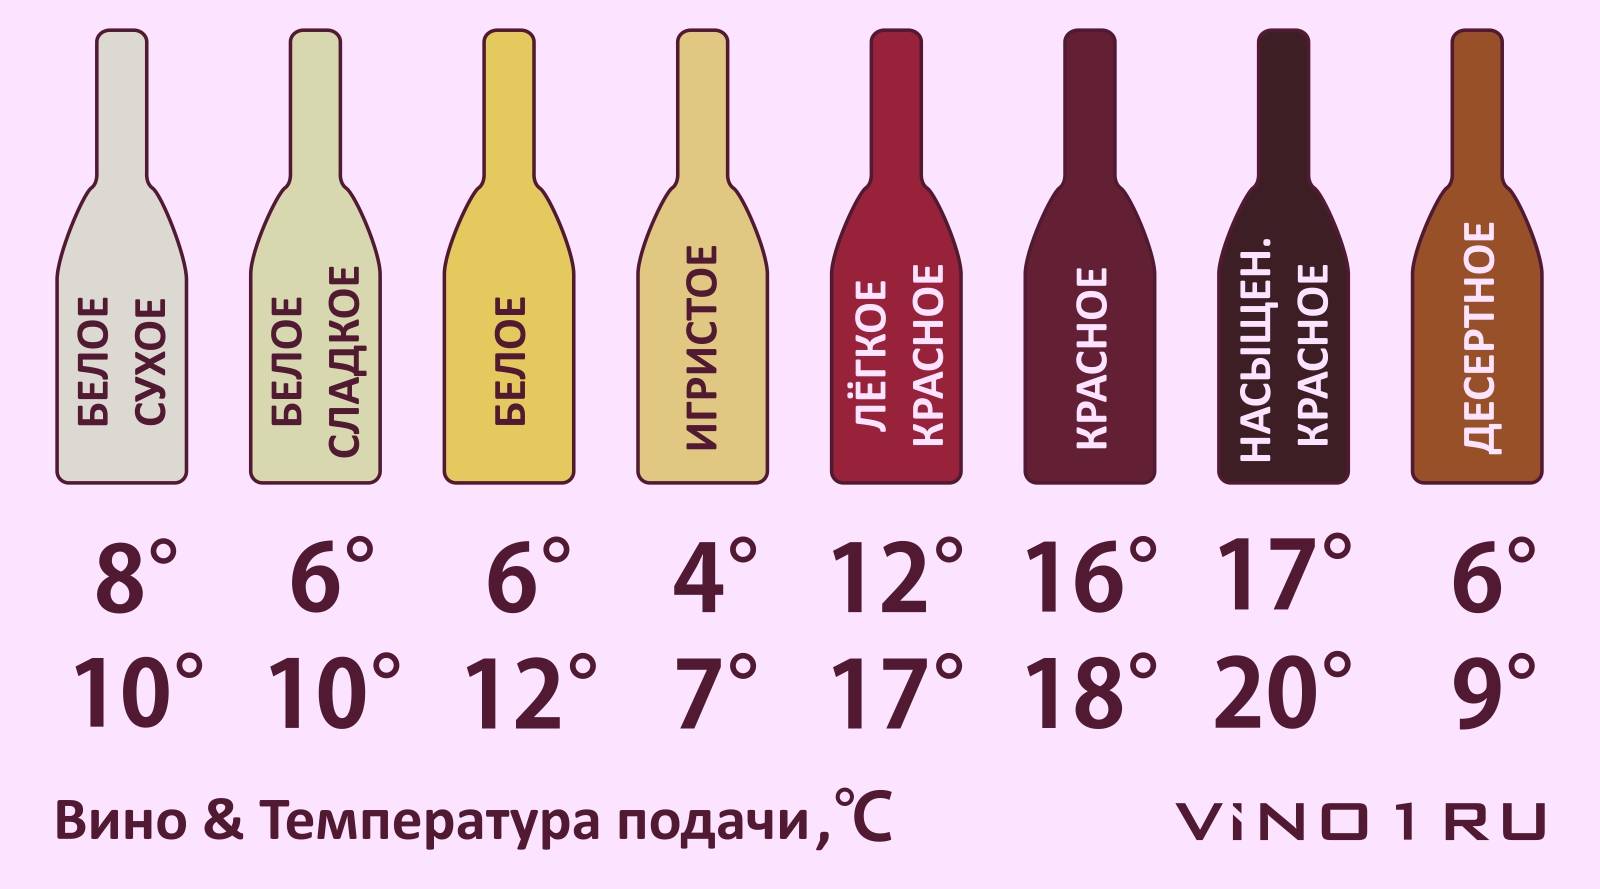 Как правильно пить виски: этикет, дегустация, бокалы, закуски | русская дымка | яндекс дзен